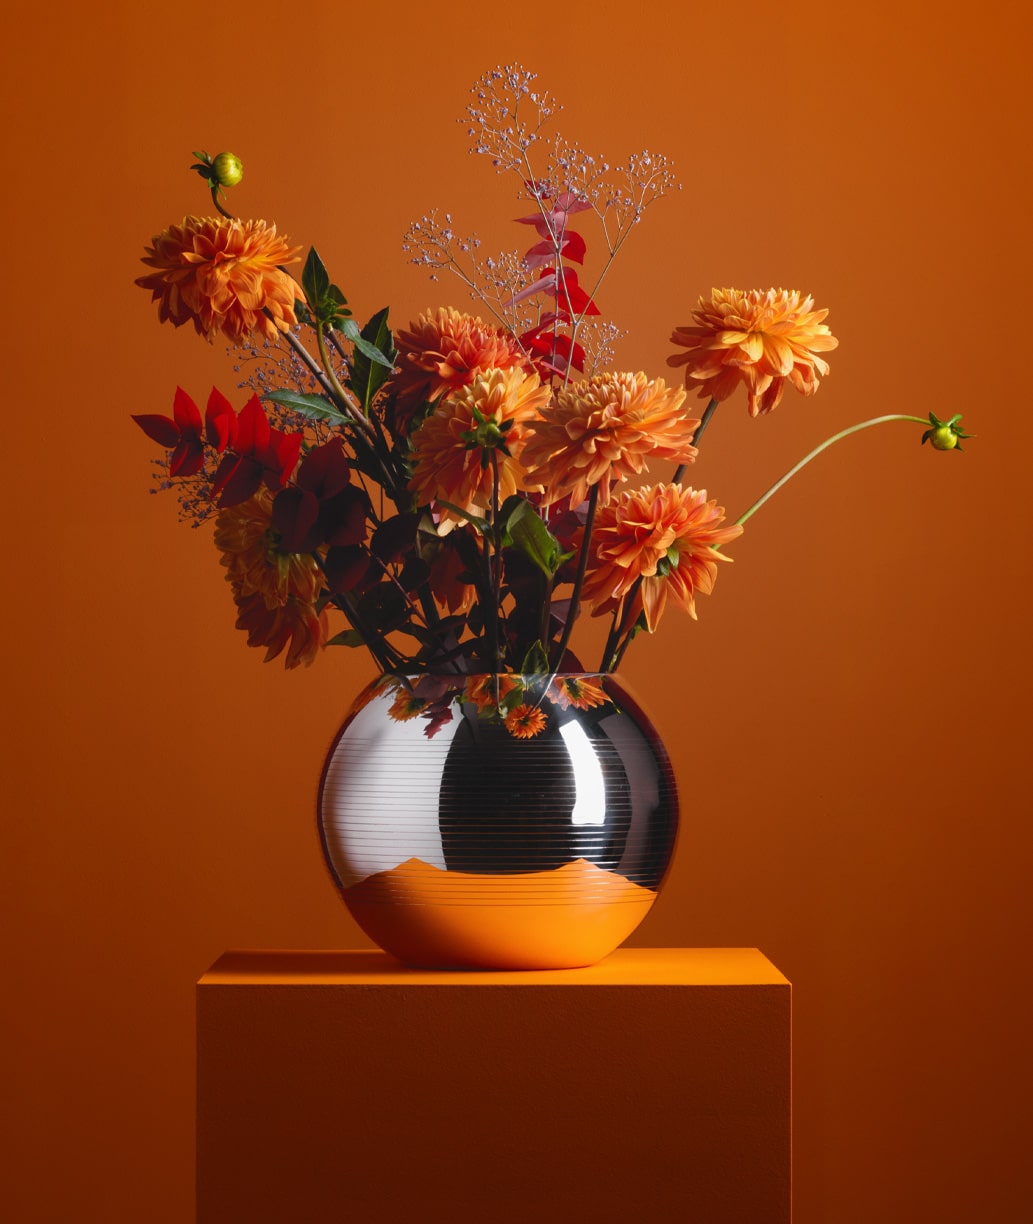 Vases en métal argenté fleuri de la collection Pétanque de Puiforcat mis en scène sur une stèle orange, sur un fond orangé